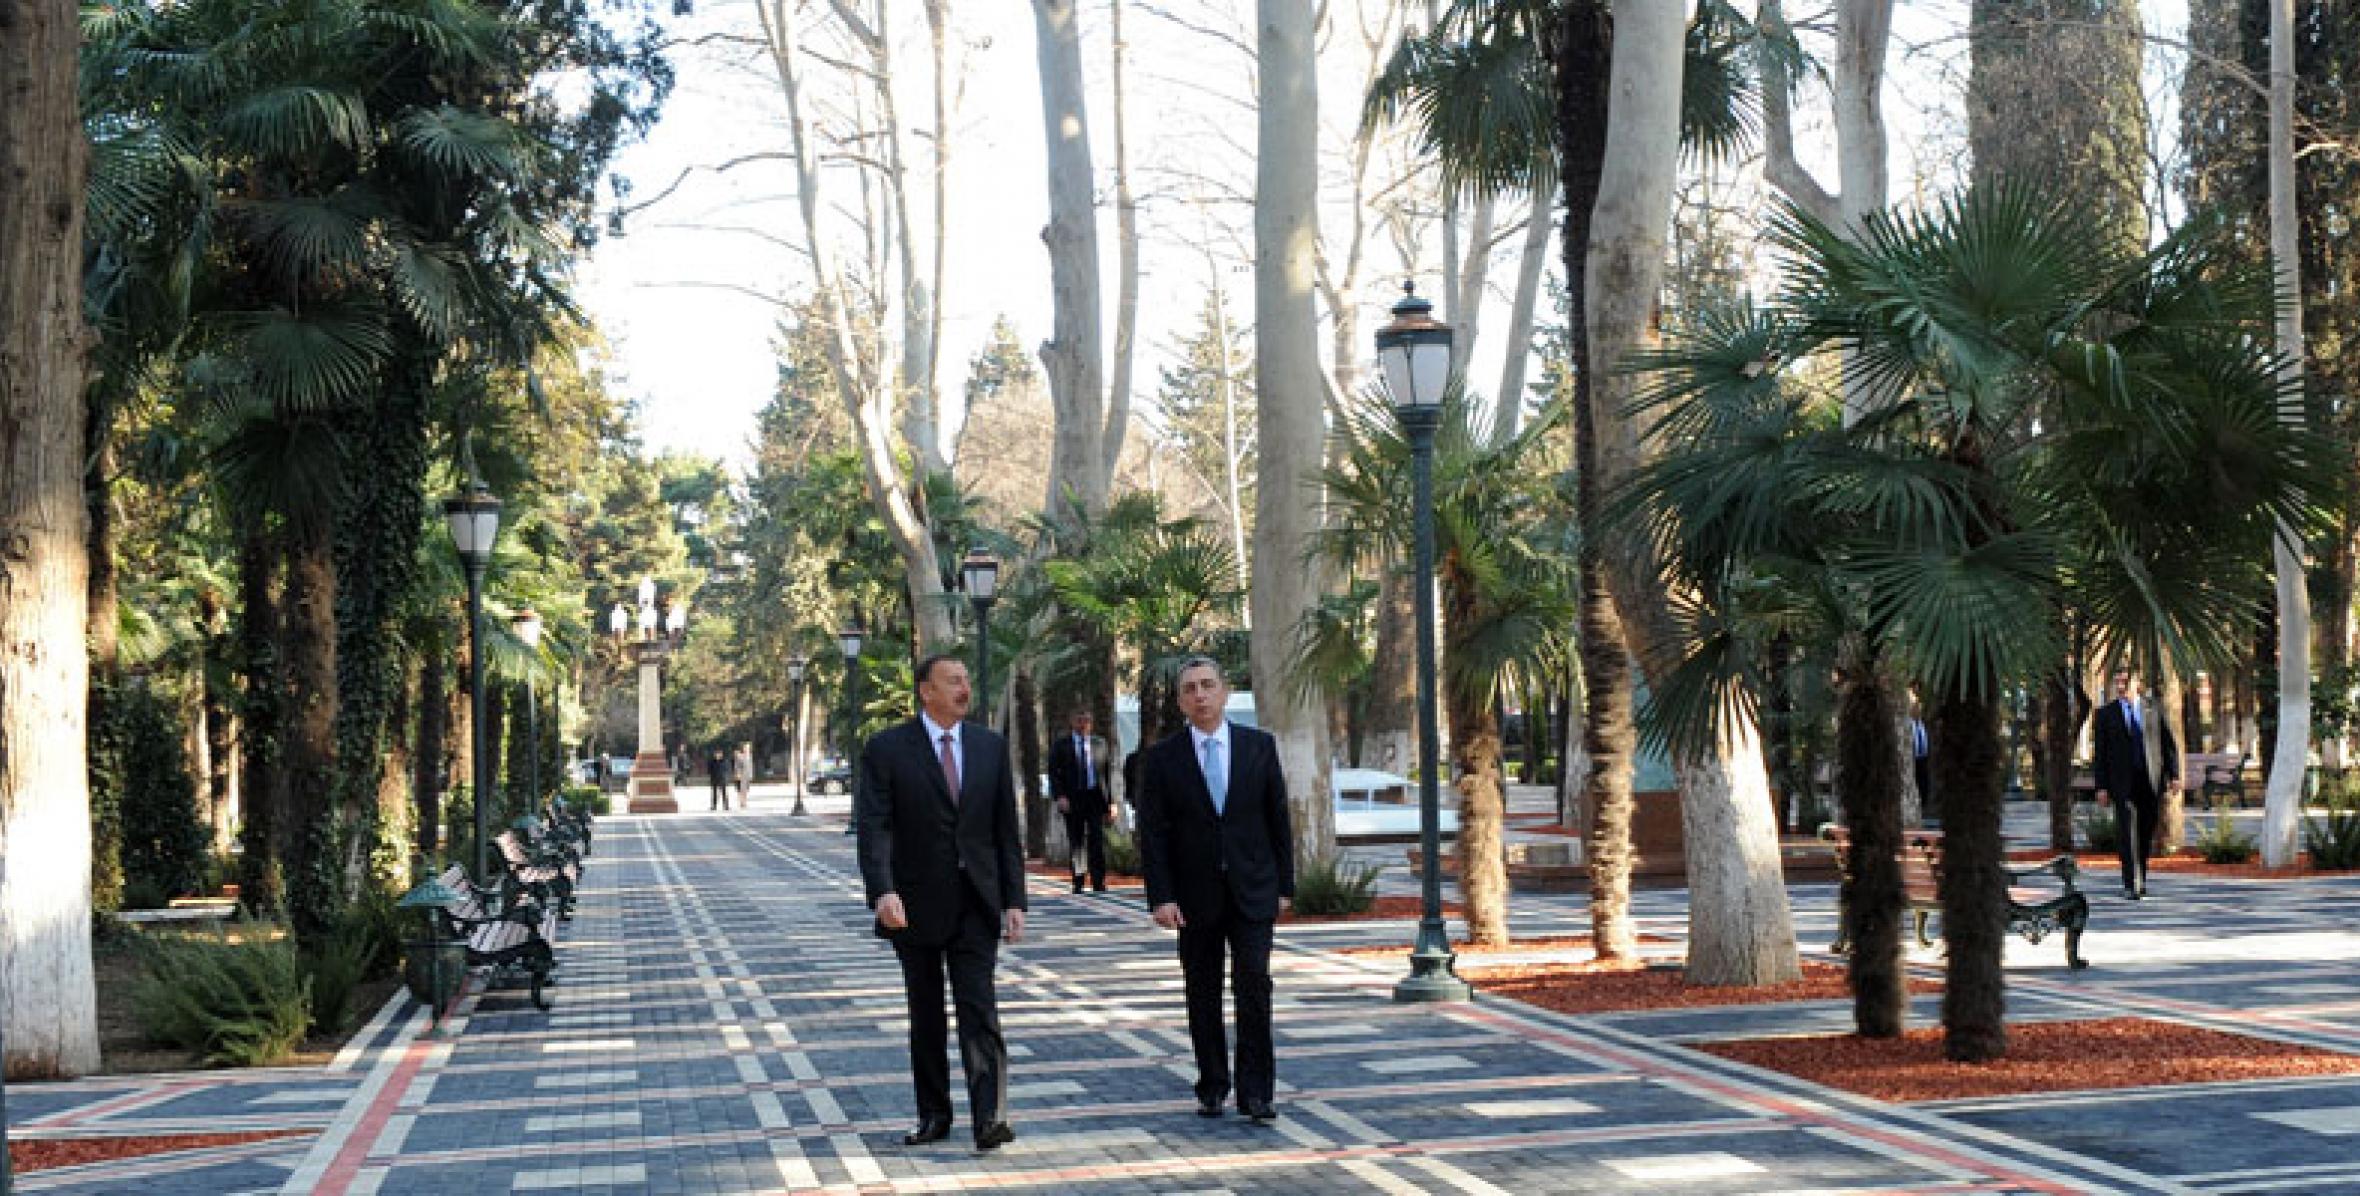 Ильхам Алиев принял участие в открытии после капитальной реконструкции парка культуры и отдыха «Хан багы» в Гяндже